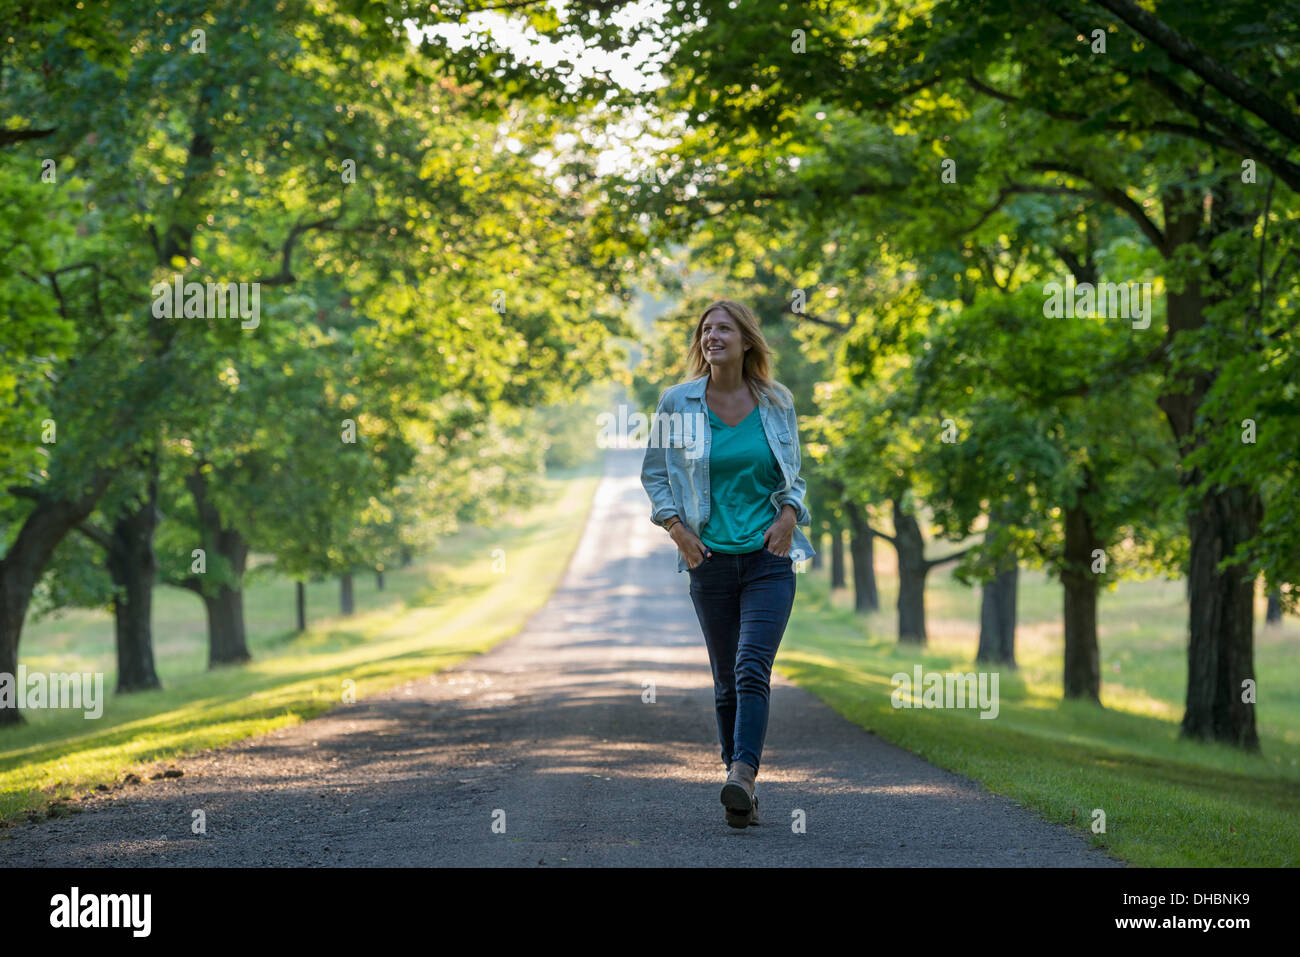 Une femme marchant dans un chemin bordé d'arbres. Banque D'Images